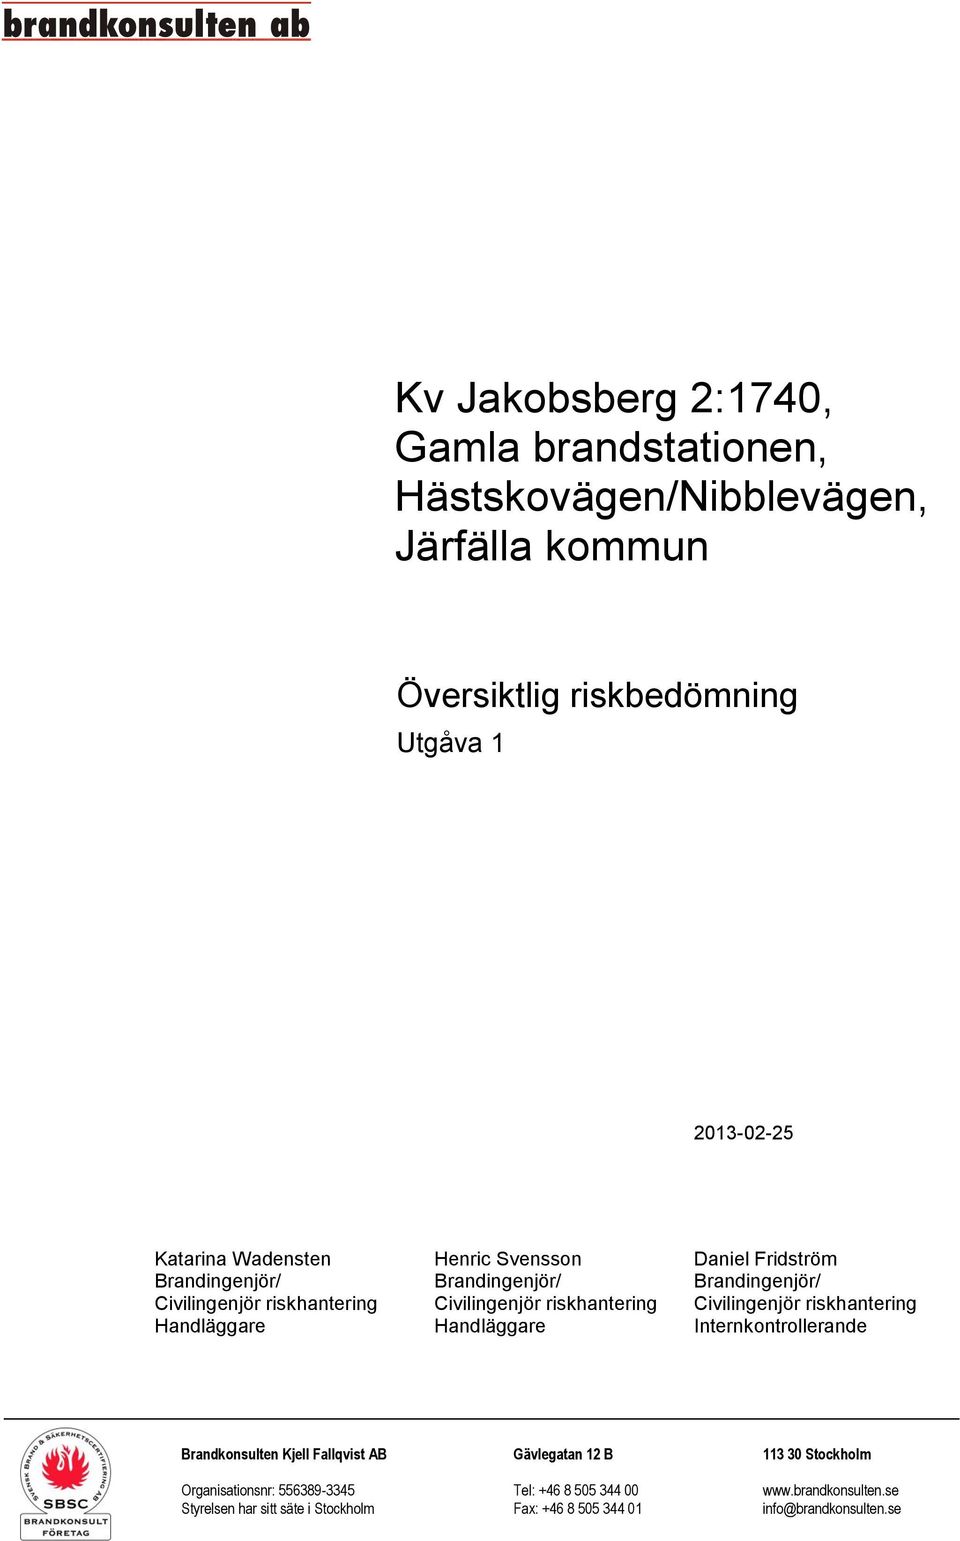 Civilingenjör riskhantering Handläggare Handläggare Internkontrollerande Brandkonsulten Kjell Fallqvist AB Gävlegatan 12 B 113 30 Stockholm